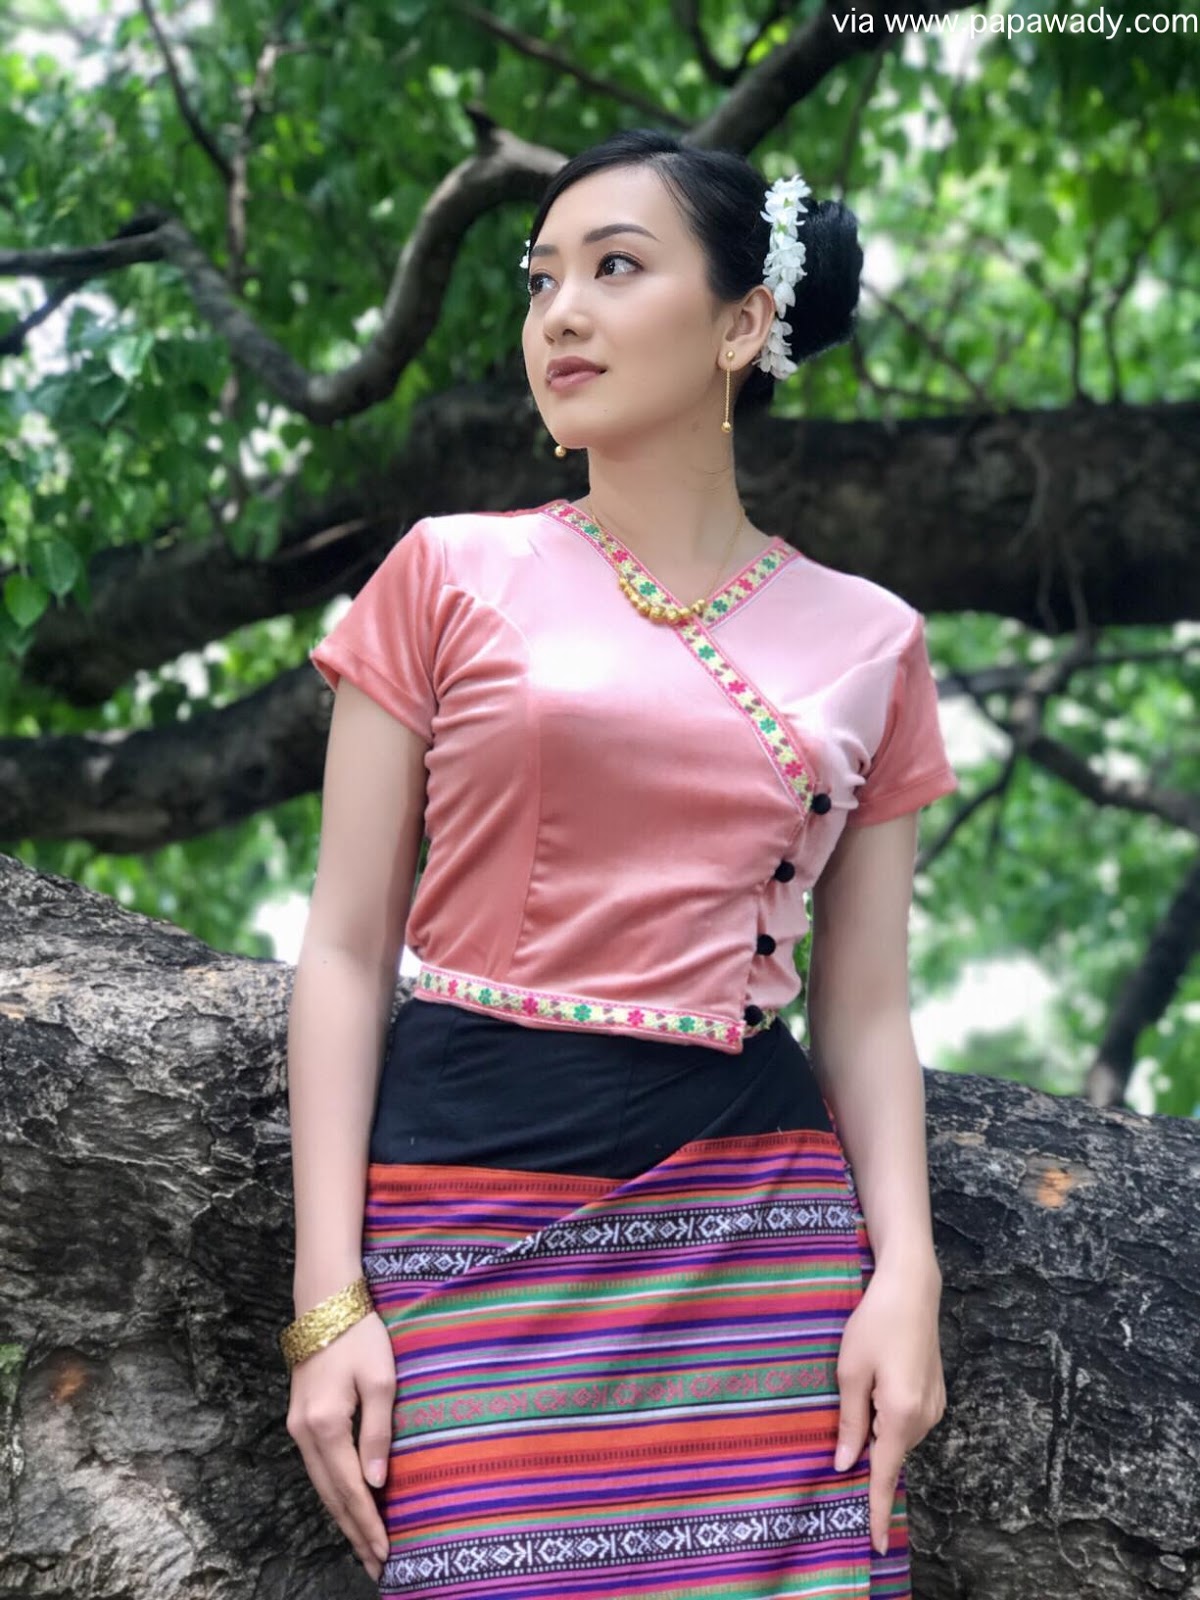 Yu Thandar Tin Fashion Style As A Myanmar Village Girl